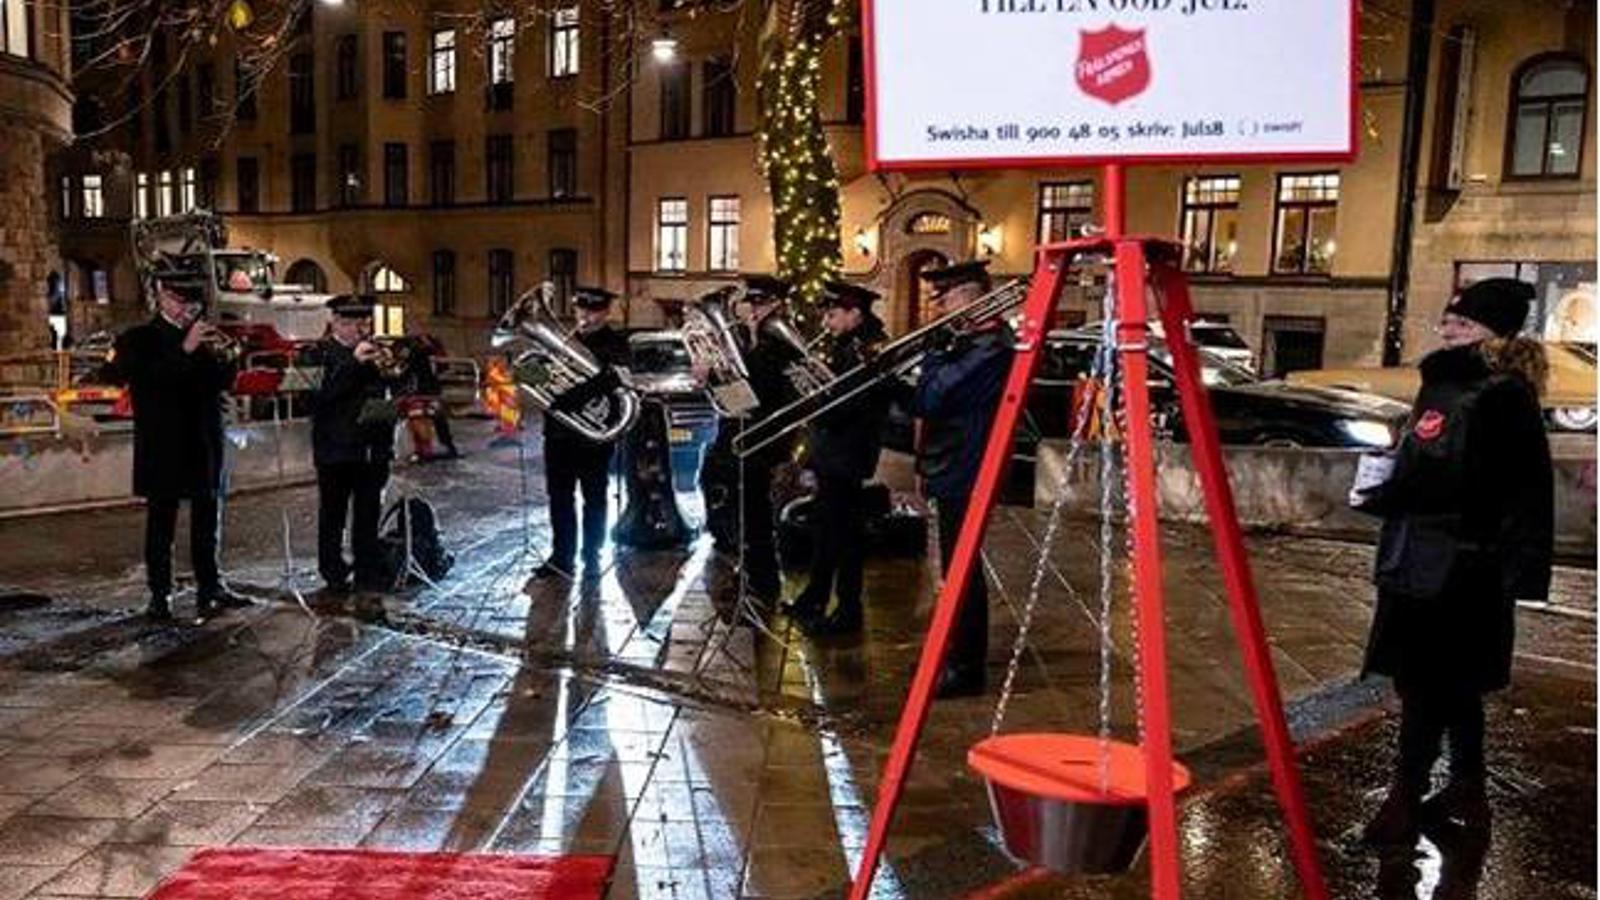 En Frälsningsarméns-skylt med texten "Ge fler möjlighet till en God Jul". Bakom skylten står personer från Frälsningsarmén och spelar instrument.